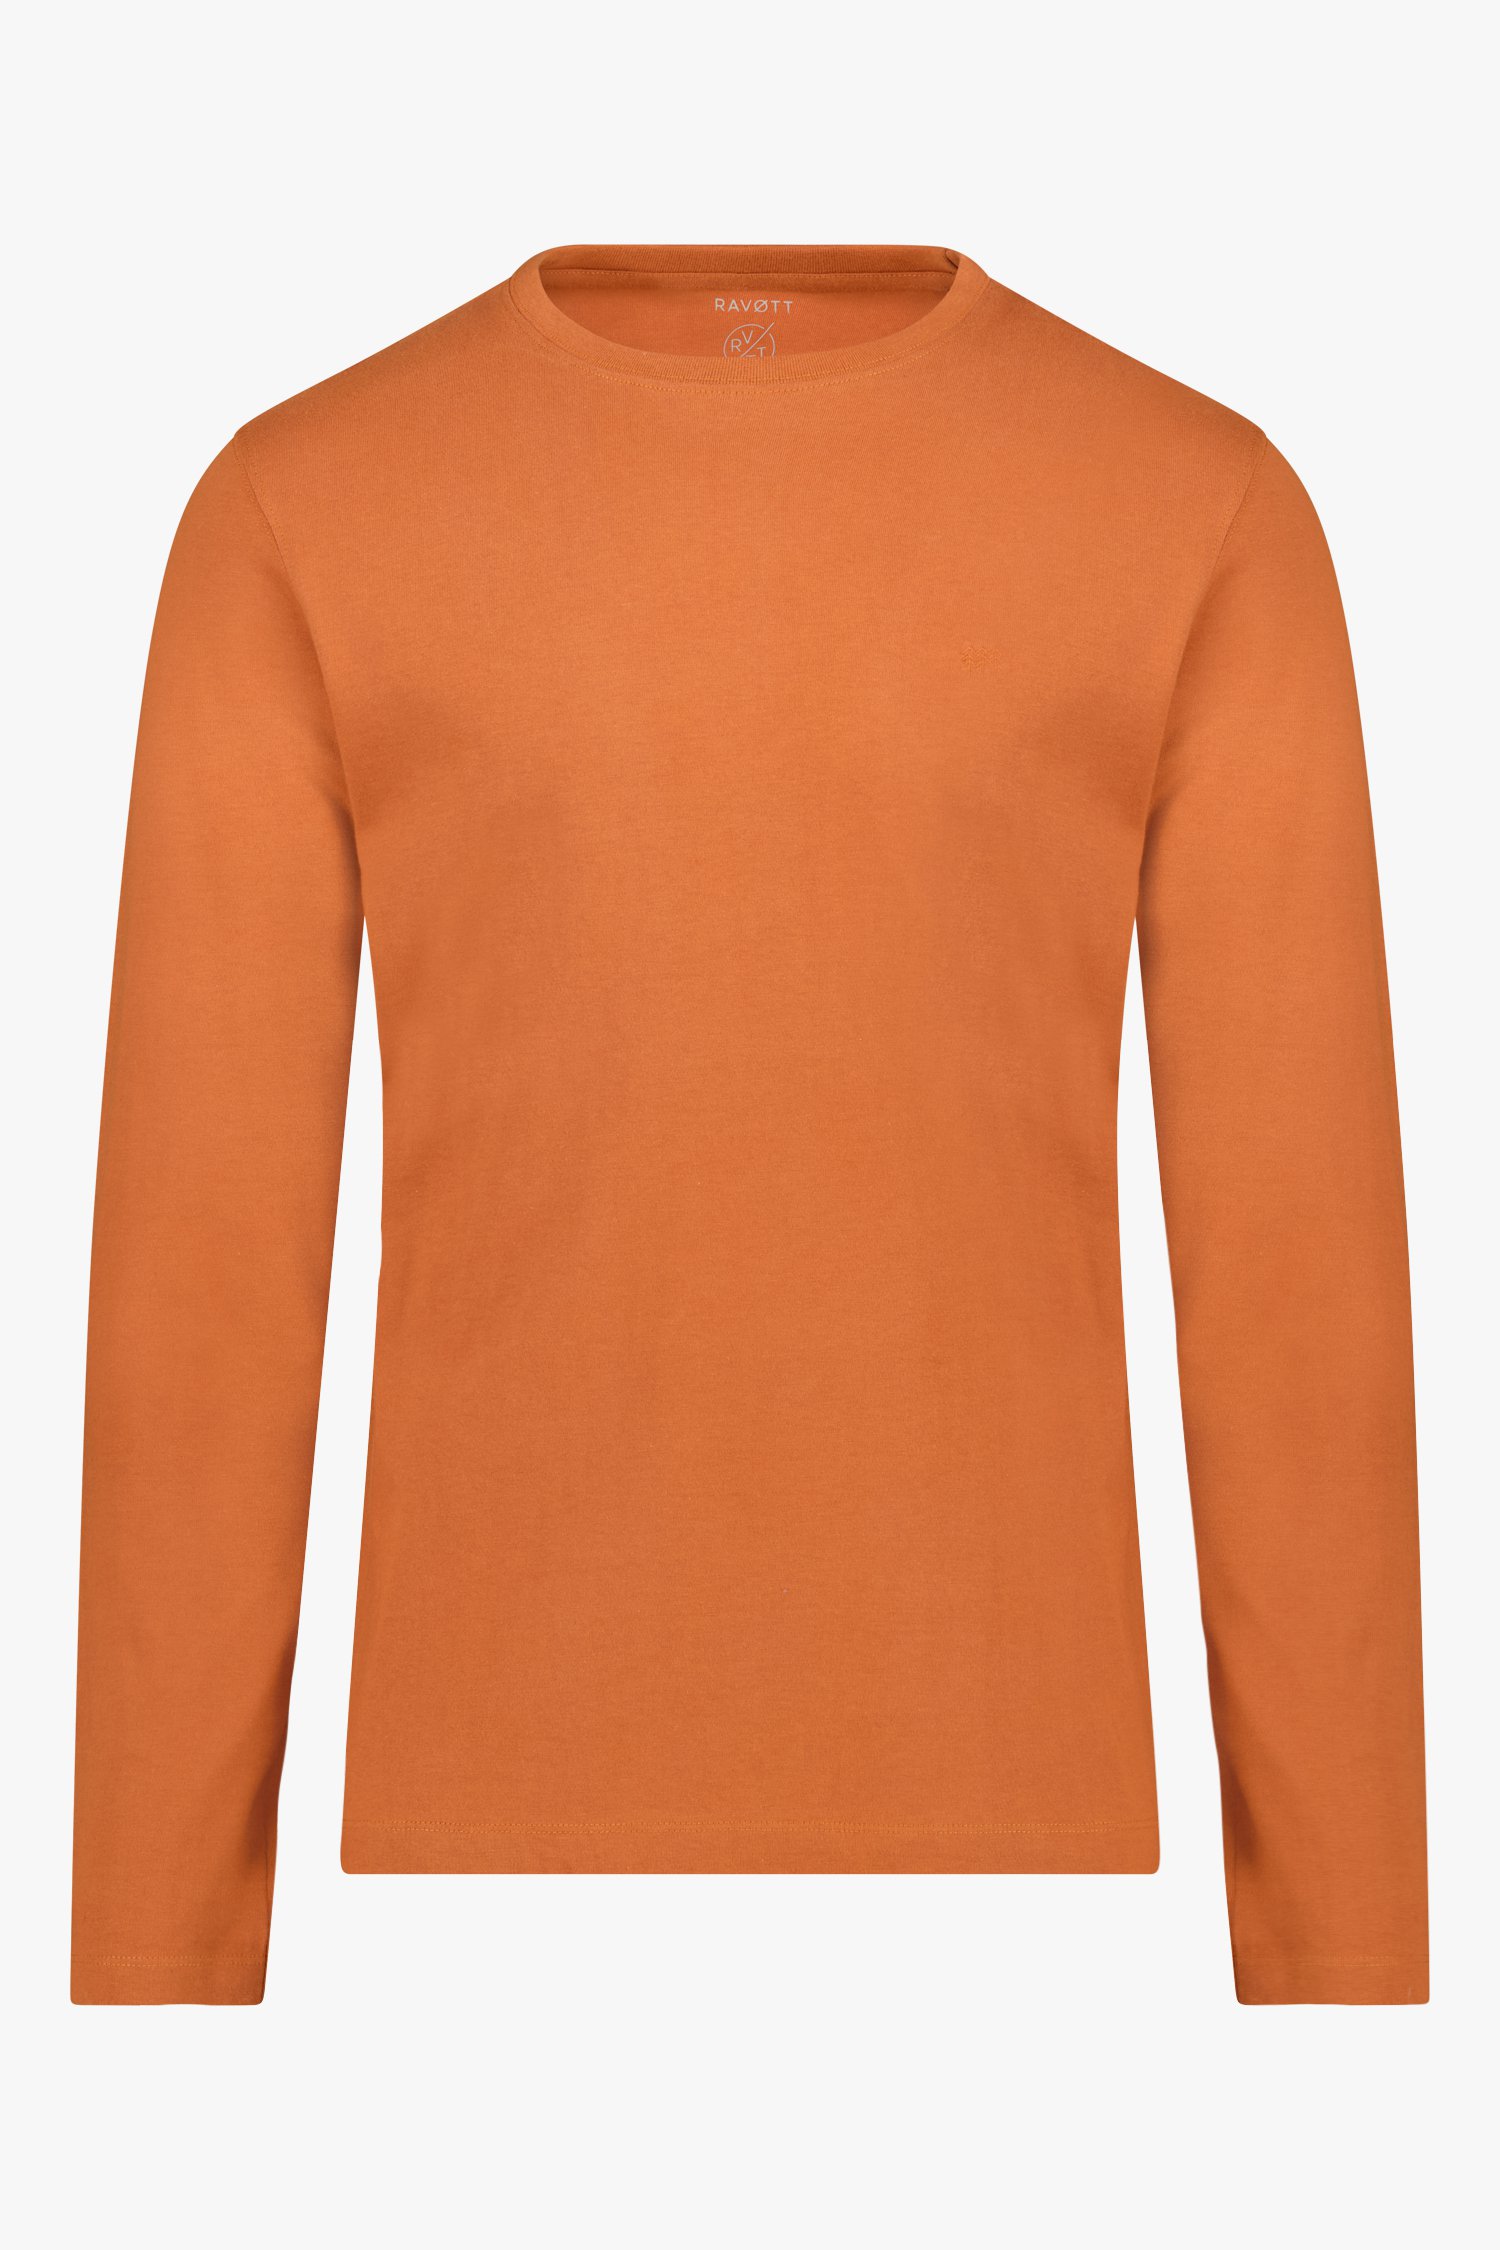 T-shirt marron orange à manches longues de Ravøtt pour Hommes